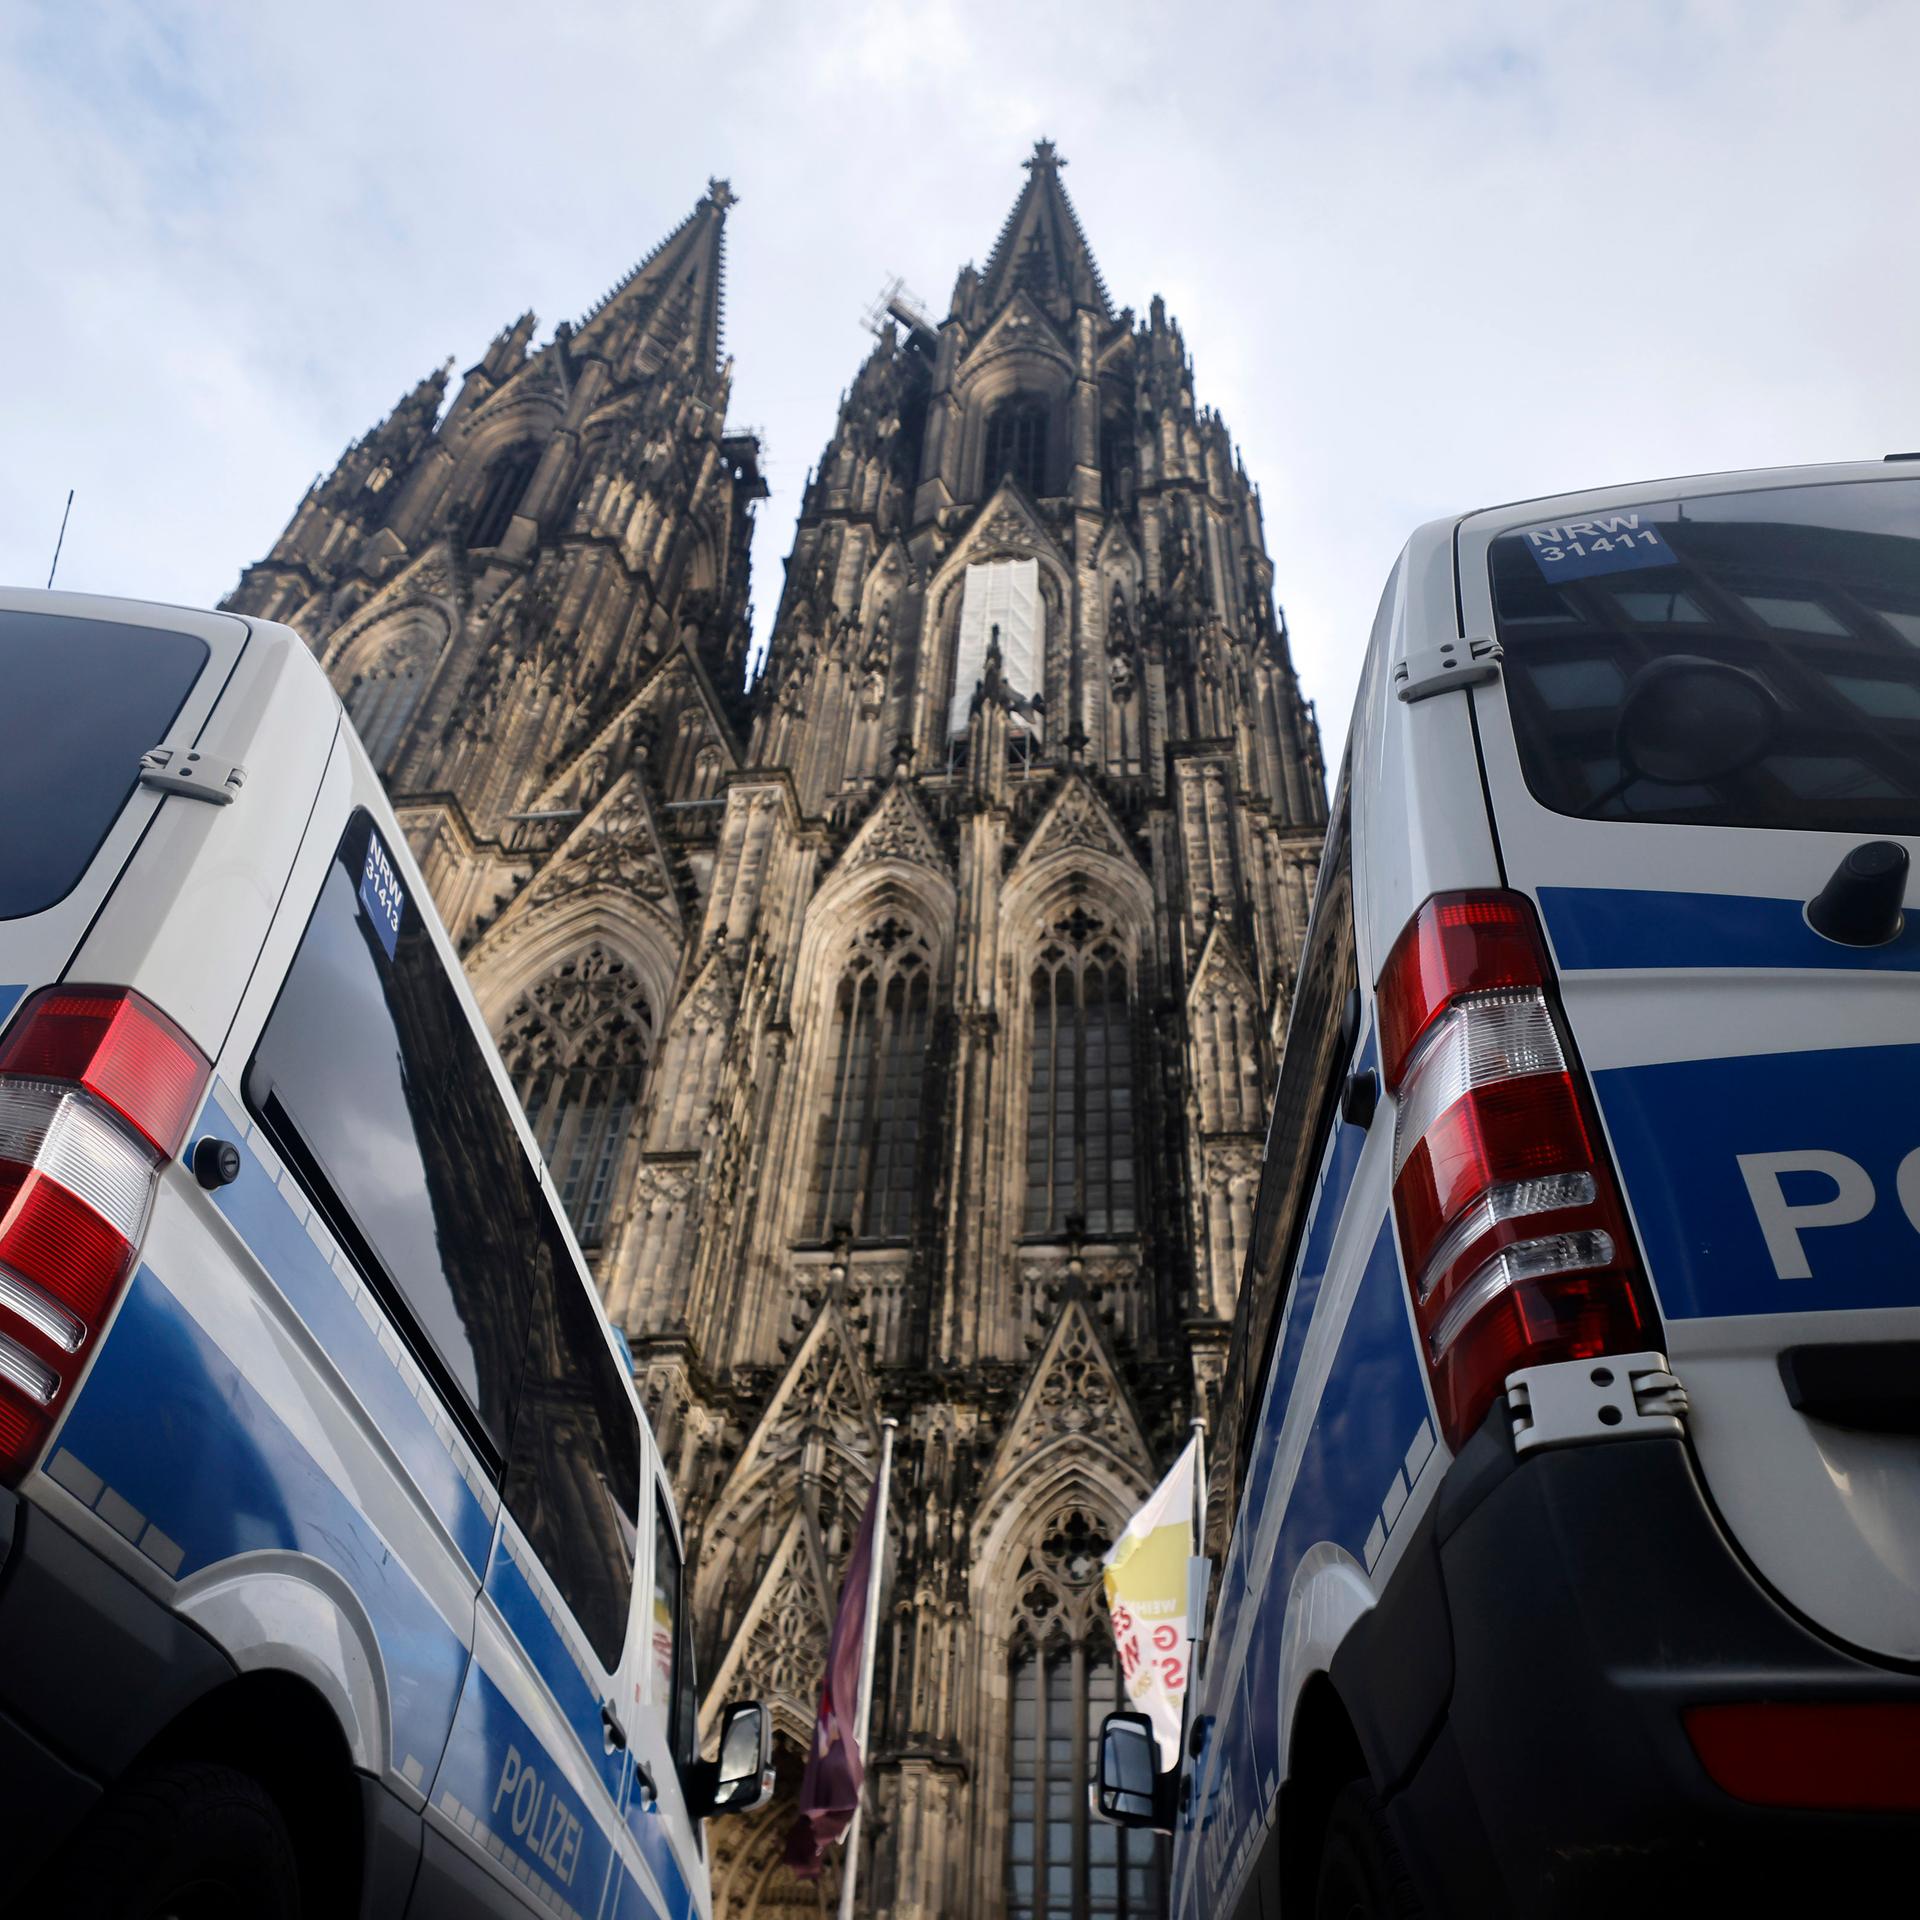 Polizeifahrzeuge stehen rund um den Kölner Dom. Terroralarm zum Jahreswechsel: Eine Terrorzelle des afghanischen ISIS-Ablegers ISPK soll über den Jahreswechsel unter anderem in Köln Anschläge geplant haben.